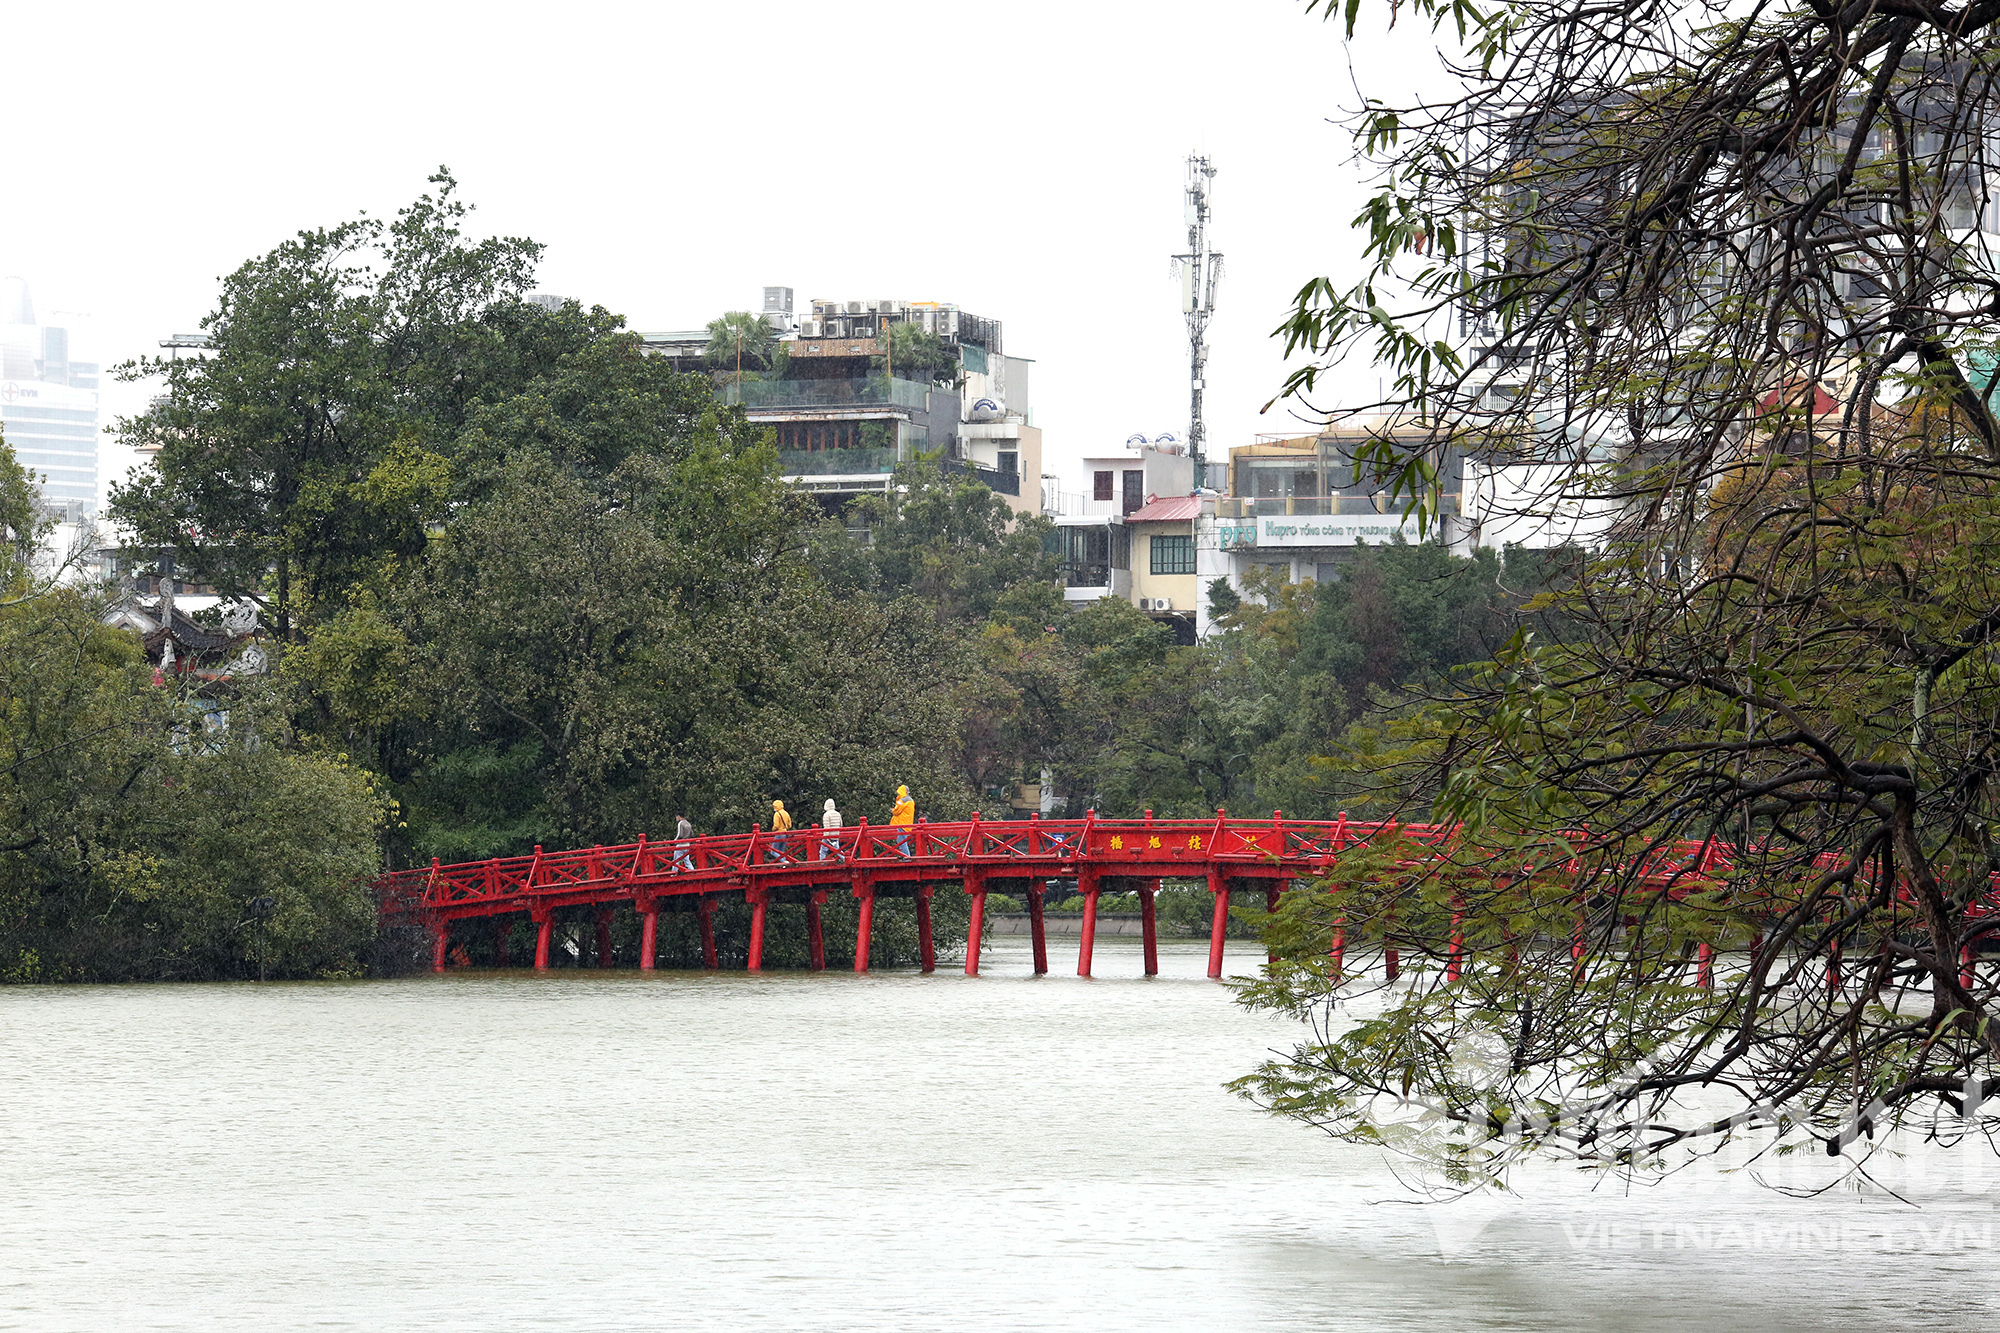 Mưa rét buốt ở Hà Nội, cần thủ vẫn dầm mình ở hồ Gươm - Ảnh 9.